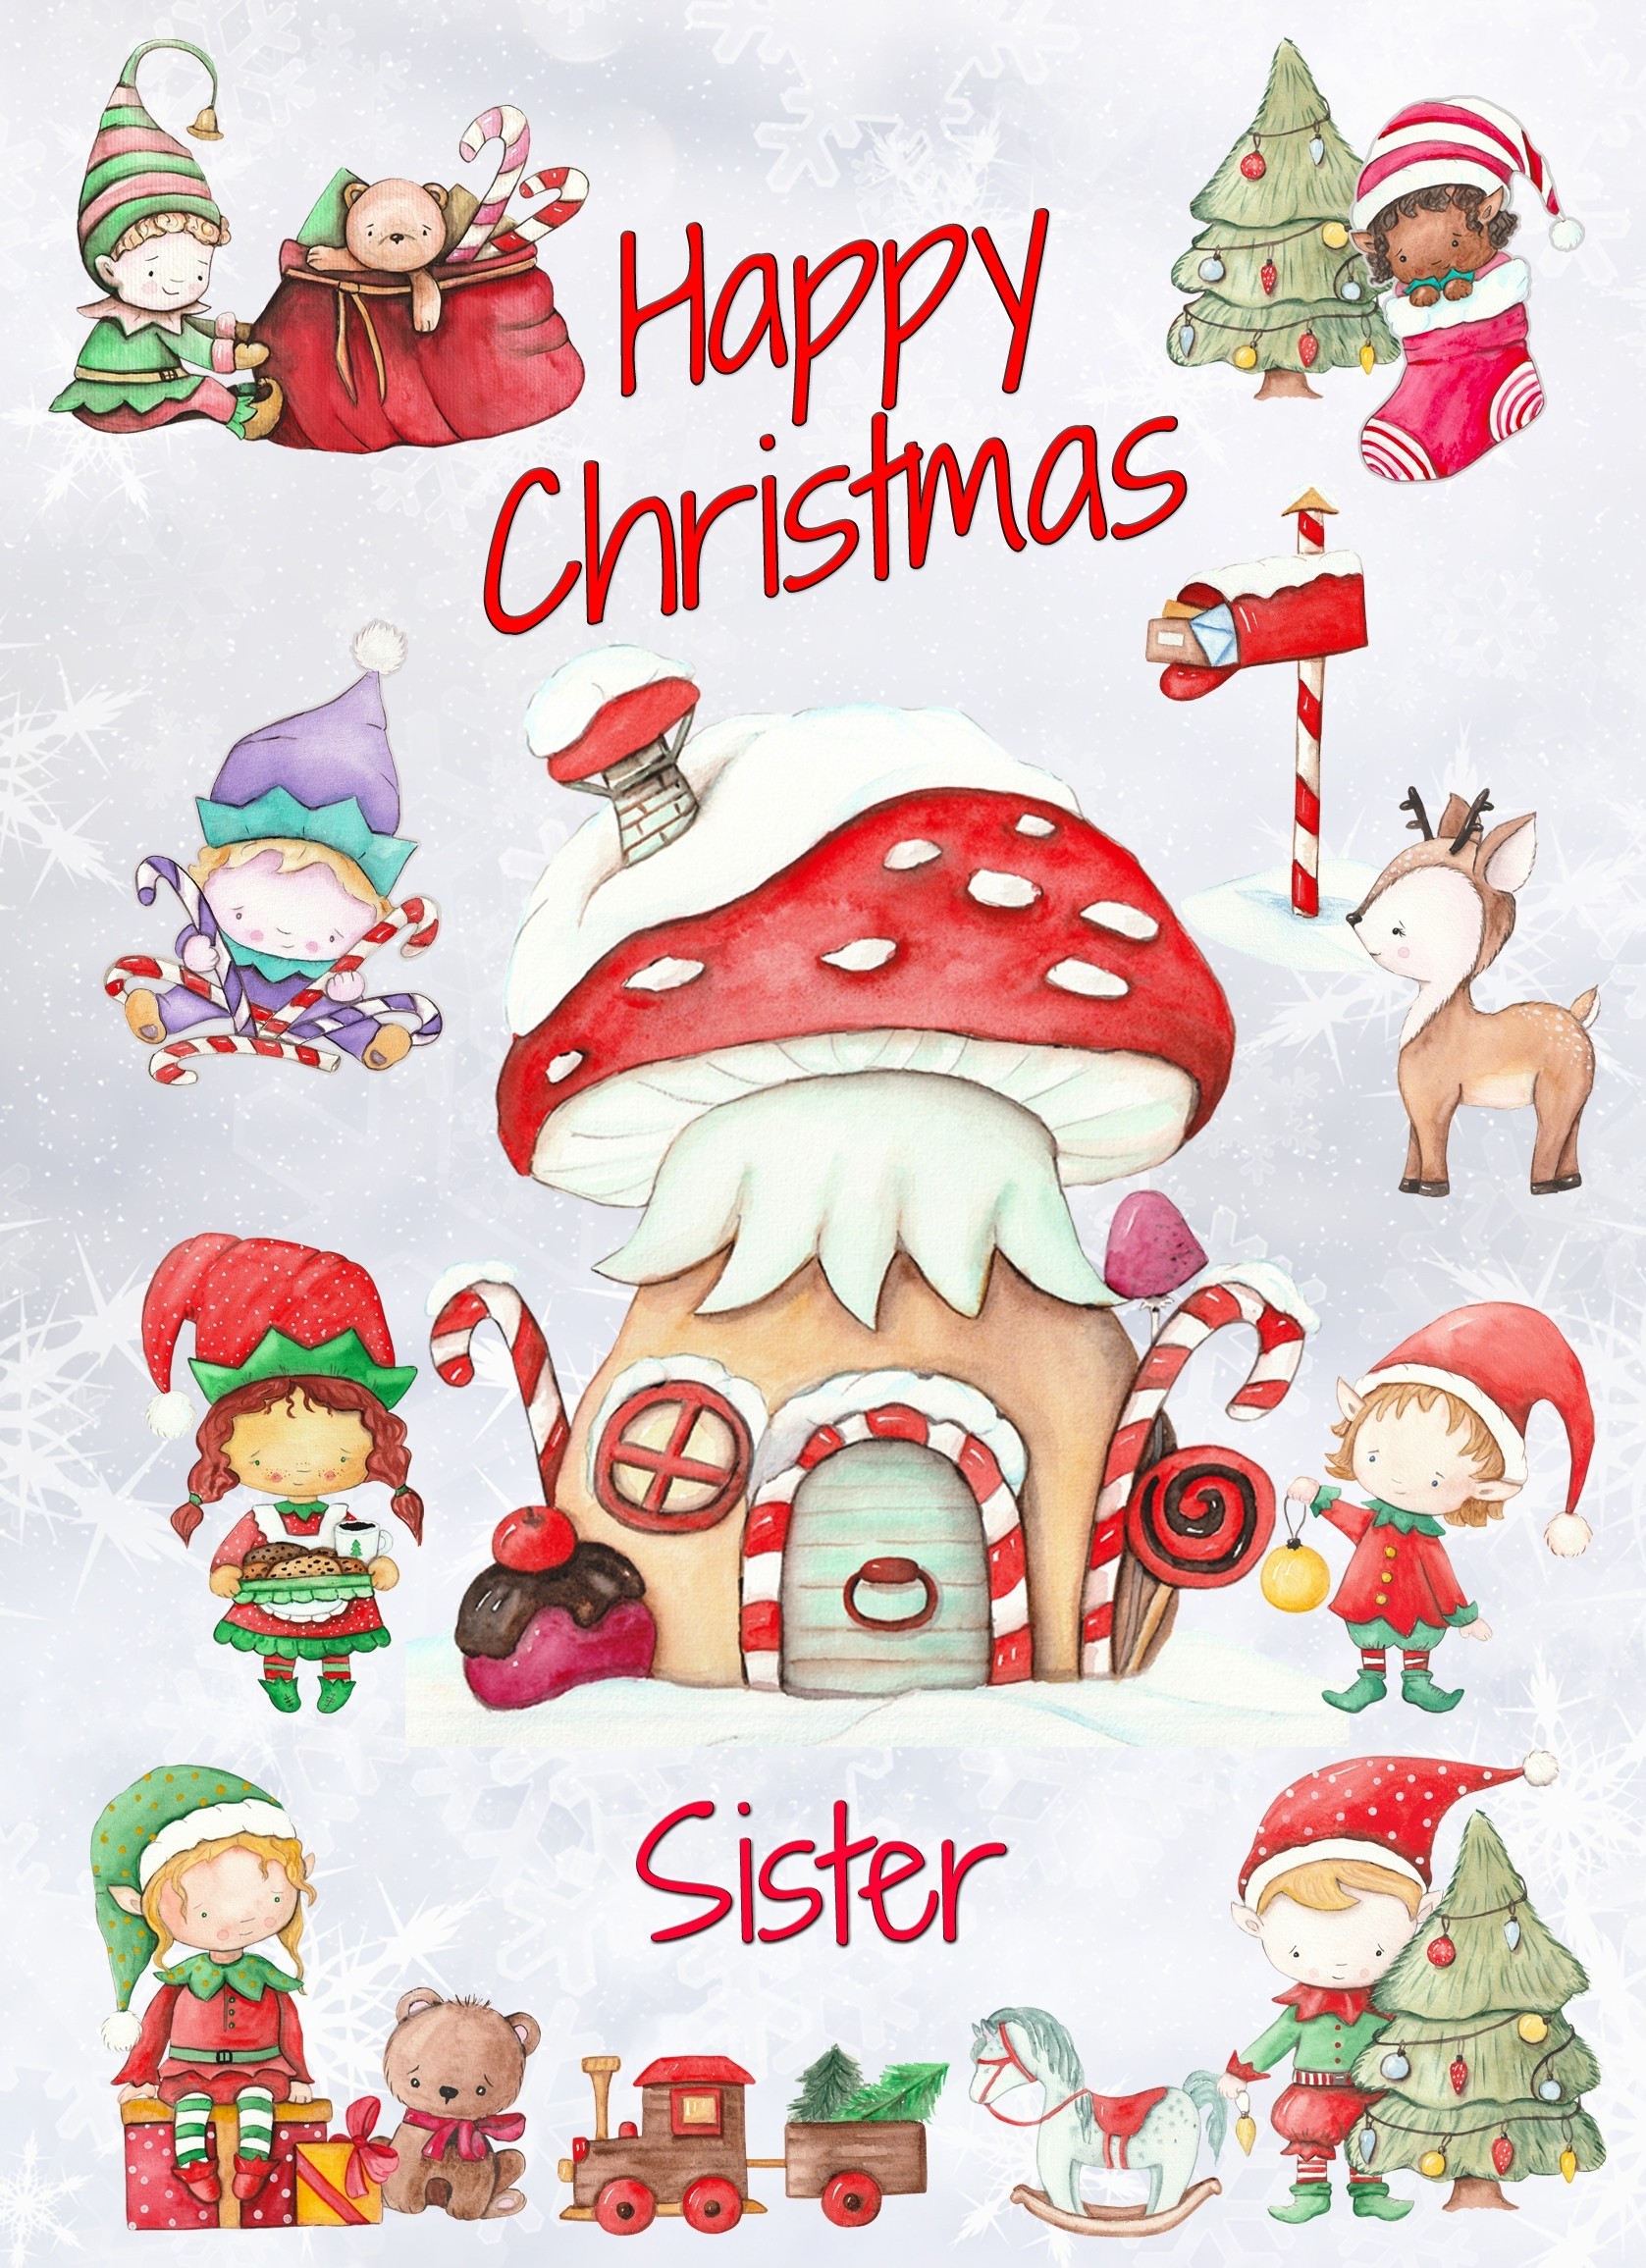 Christmas Card For Sister (Elf, White)